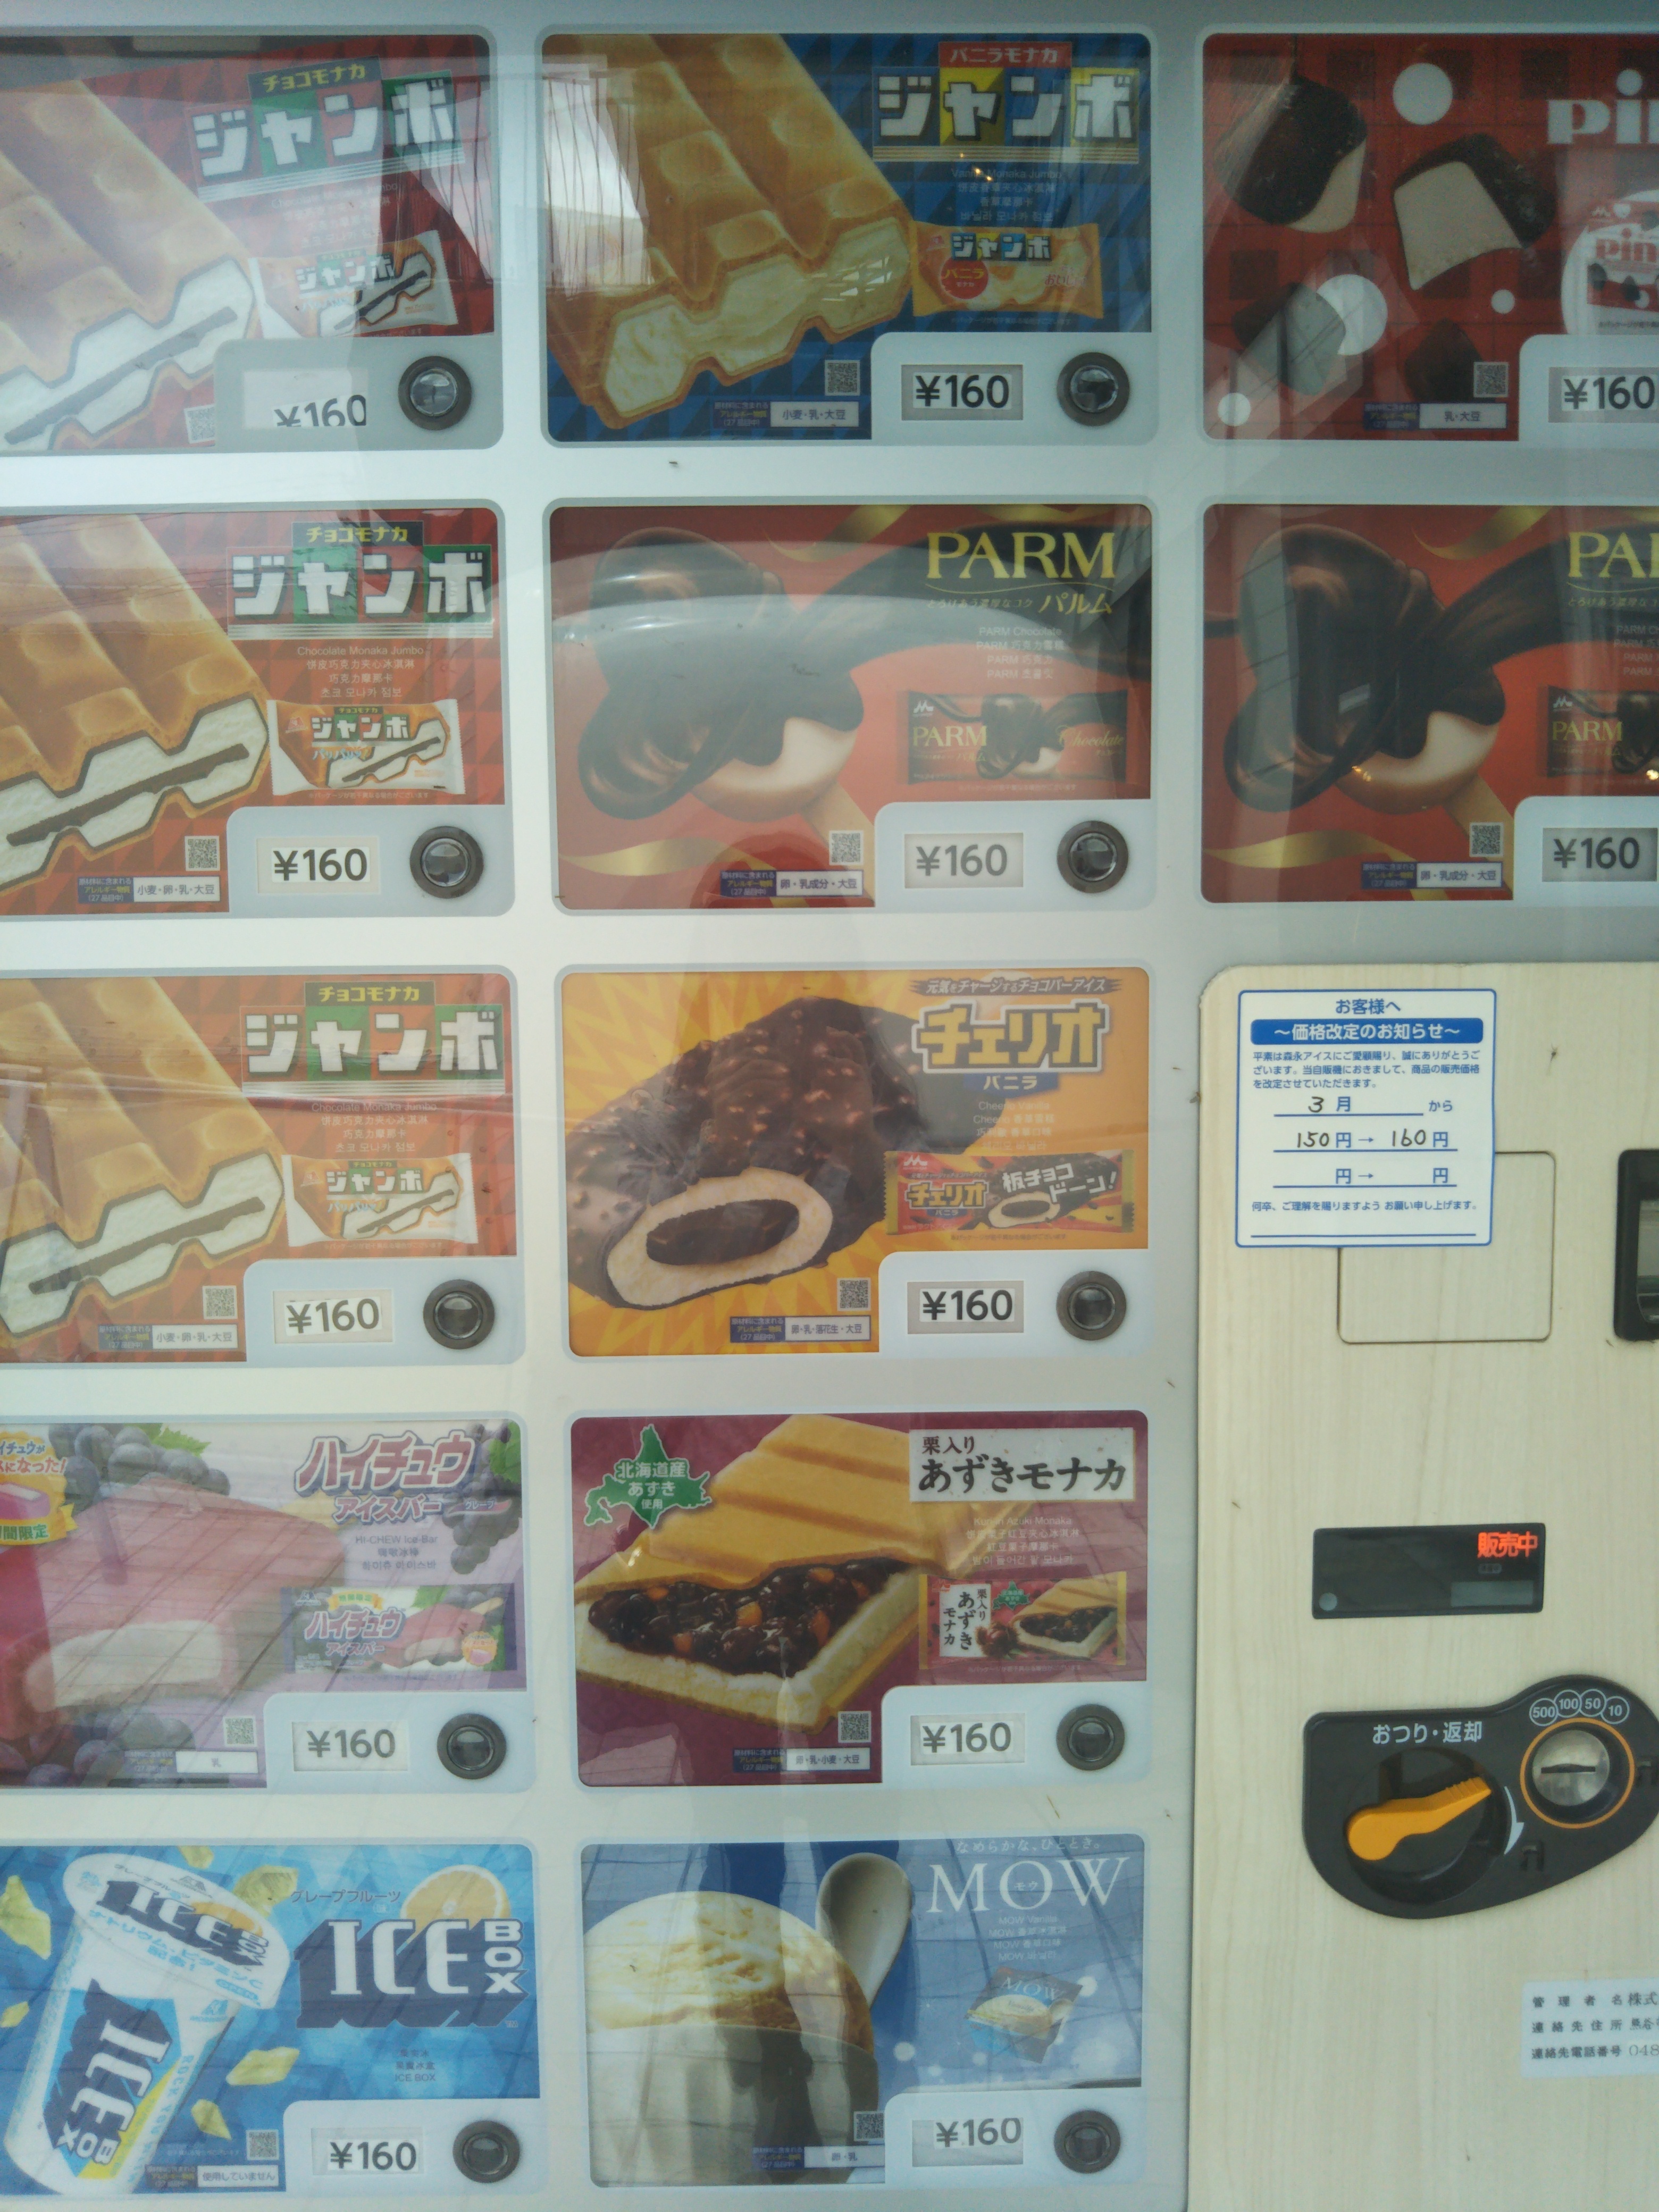 あった、よかった、アイスの自販機、昨年と同じ場所で撮影   エンゼル